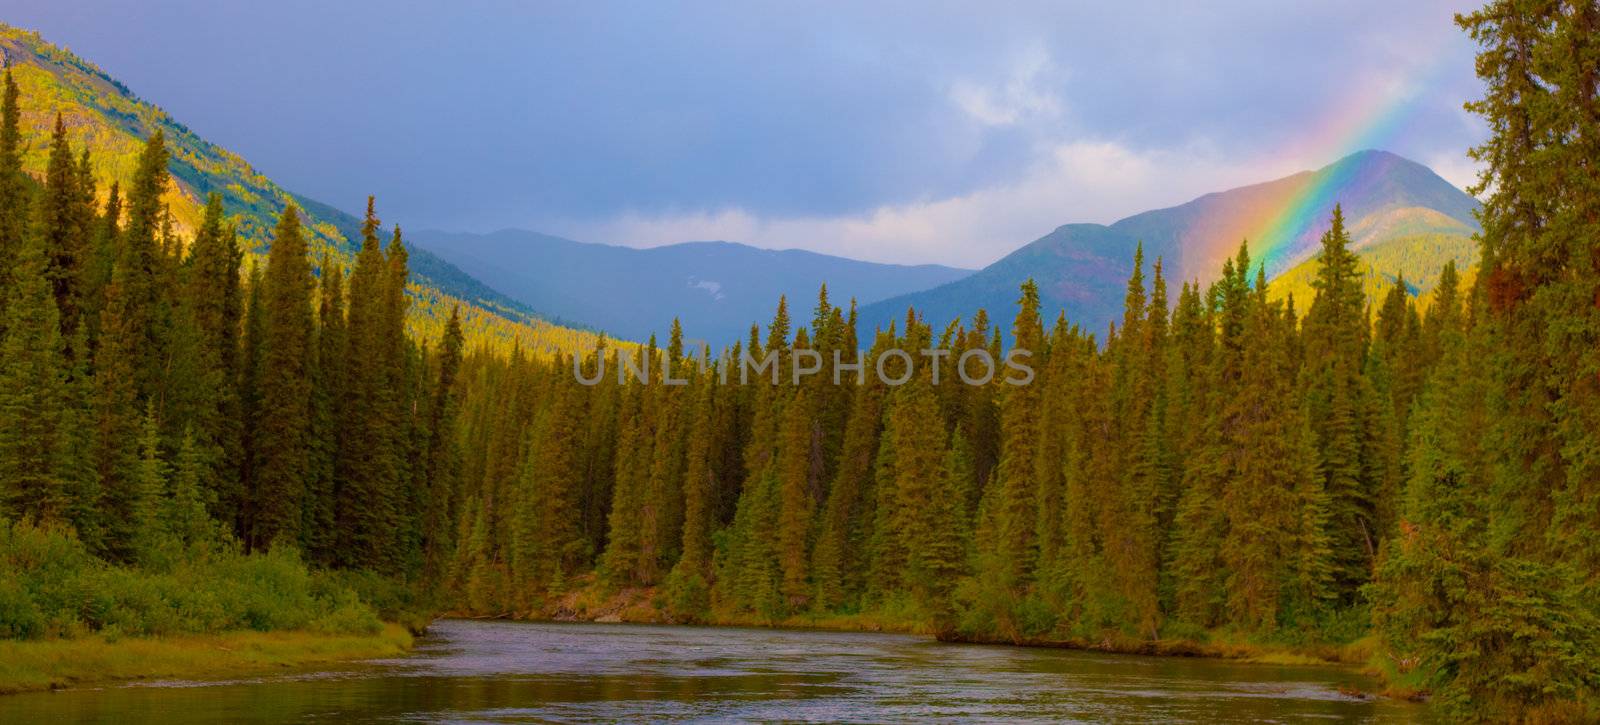 Rainbow in beautiful valley of Big Salmon River, Yukon Territory, Canada